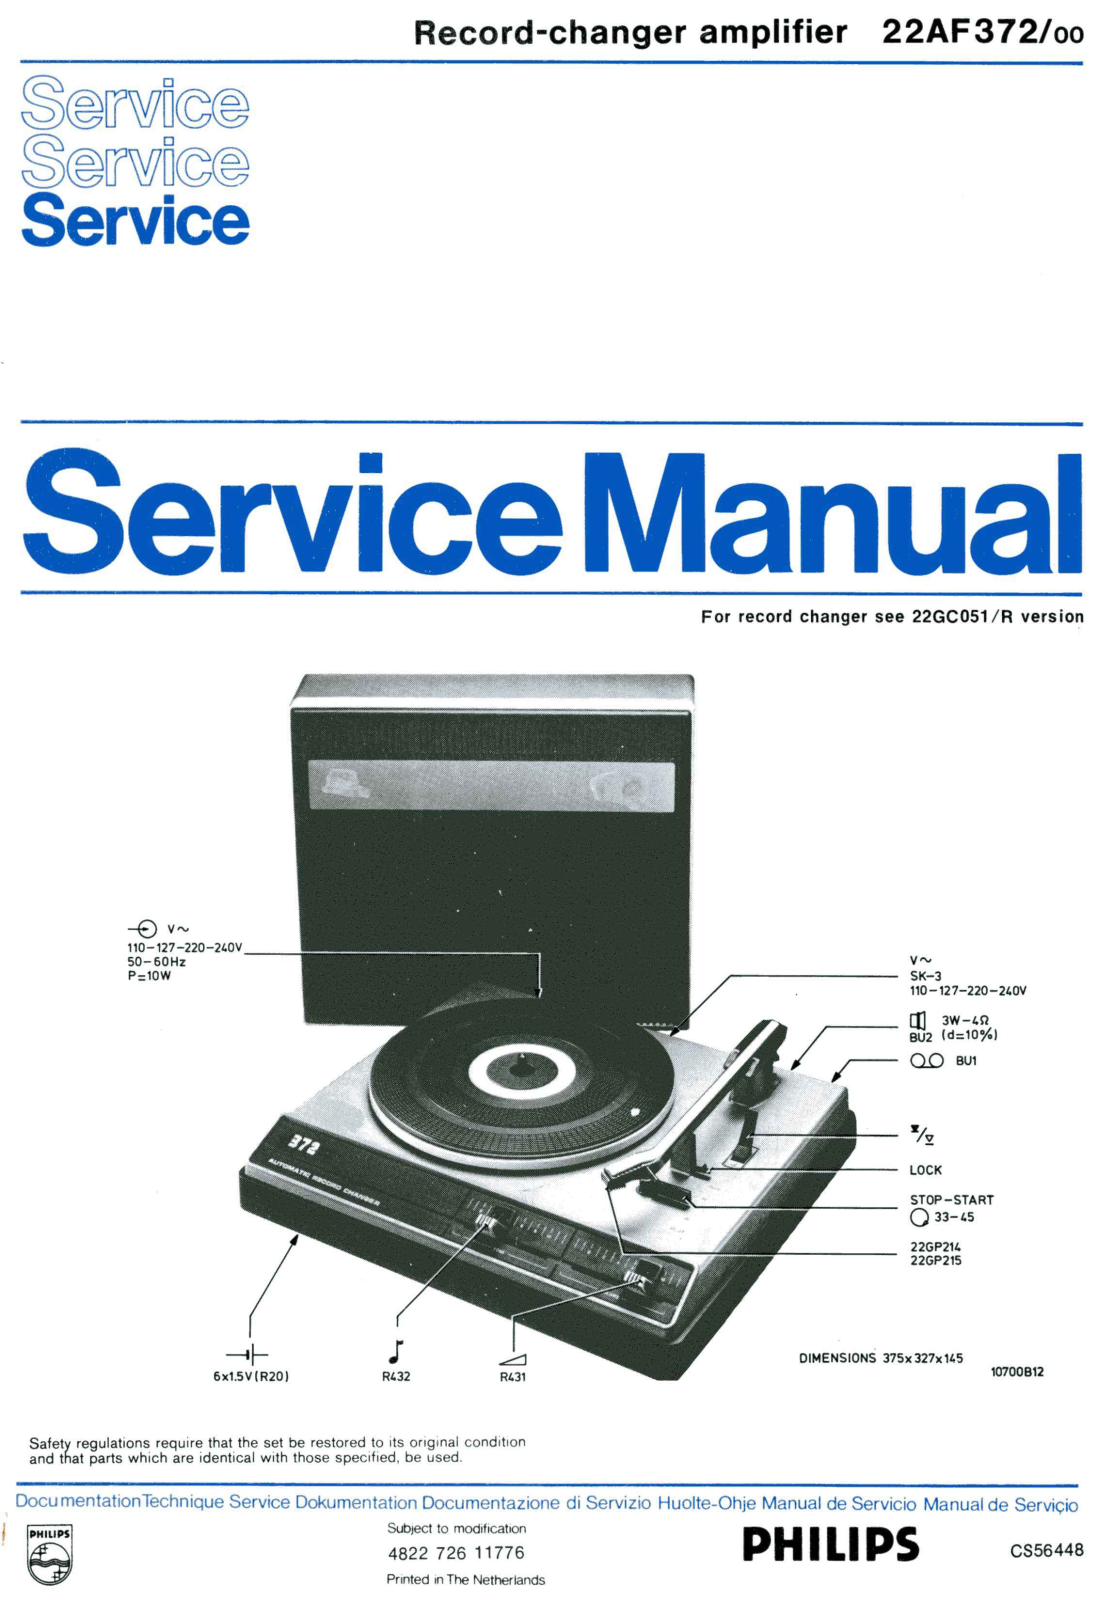 Philips 22-AF-372 Service Manual